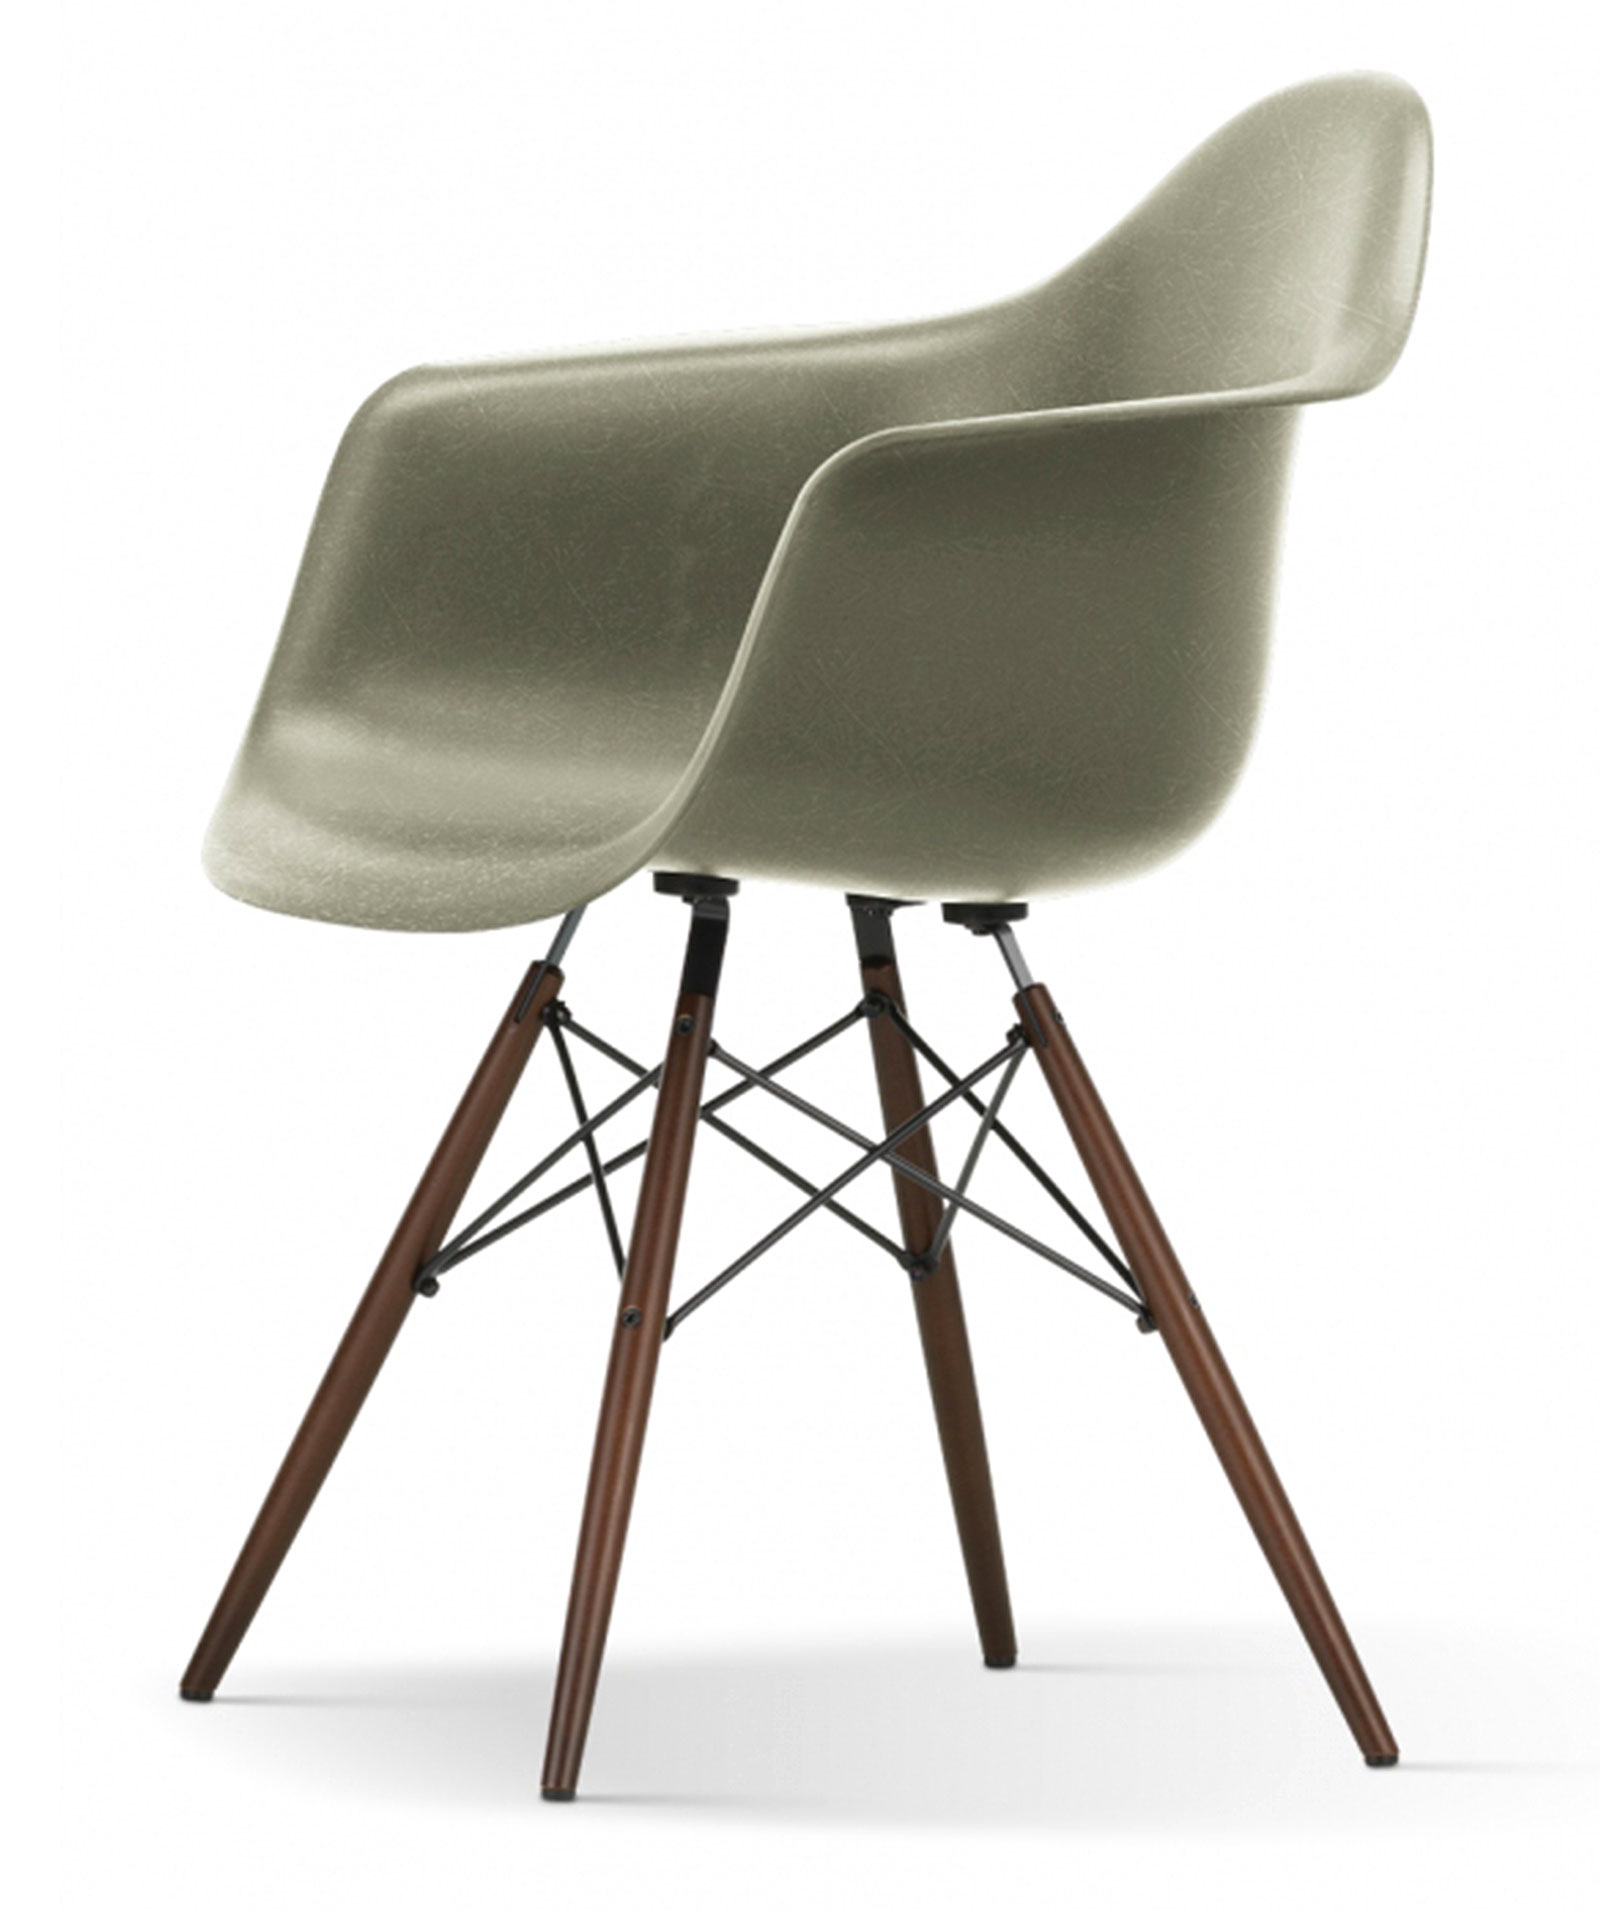 DAW Chair "Base Dark Maple" Charles & Eames, 1950 -